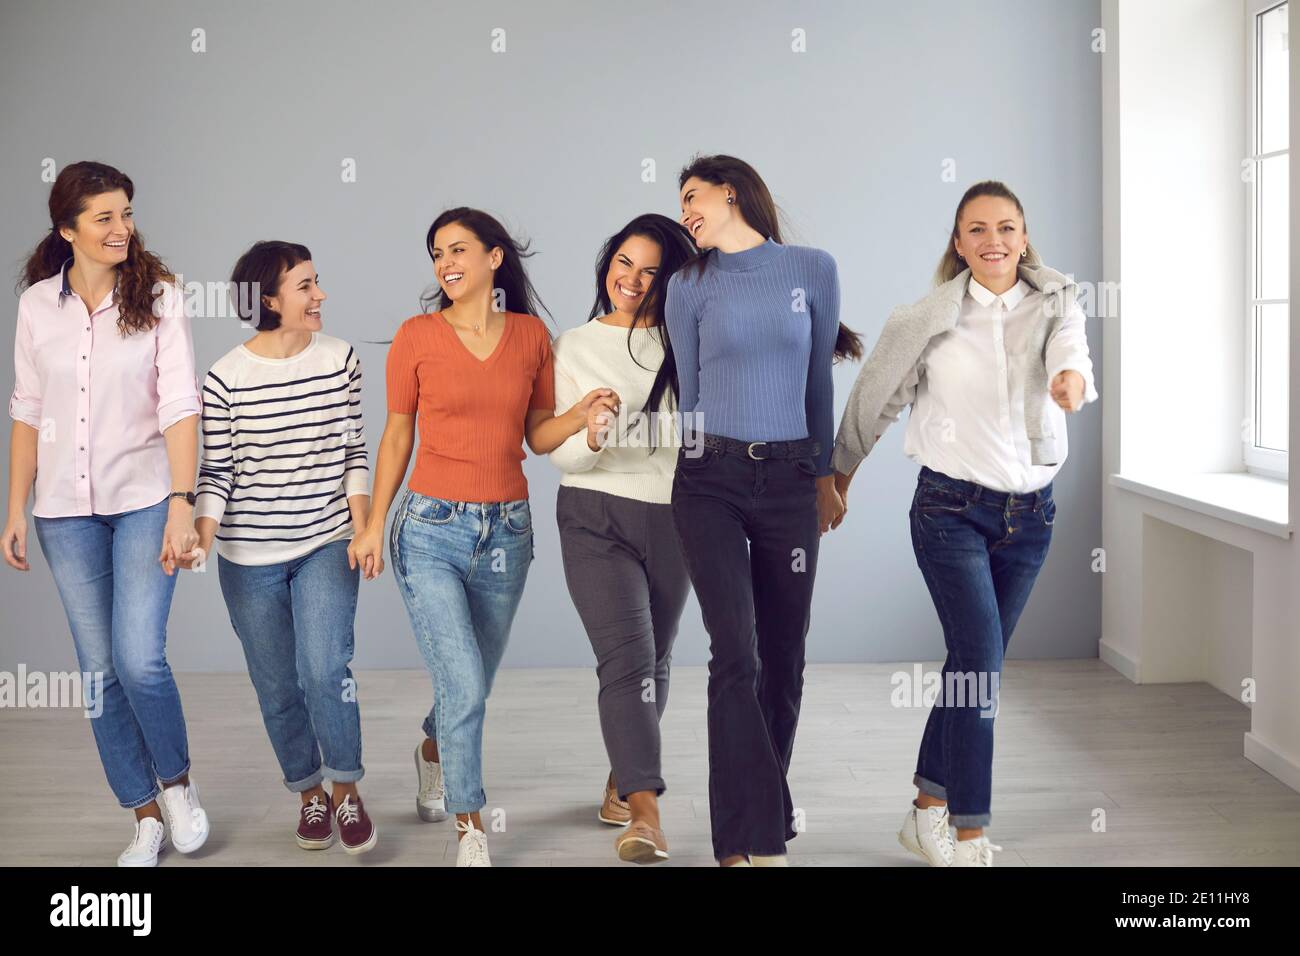 Gruppe von glücklichen schönen jungen Frauen, die zusammen gehen, Hände halten und lächeln Stockfoto